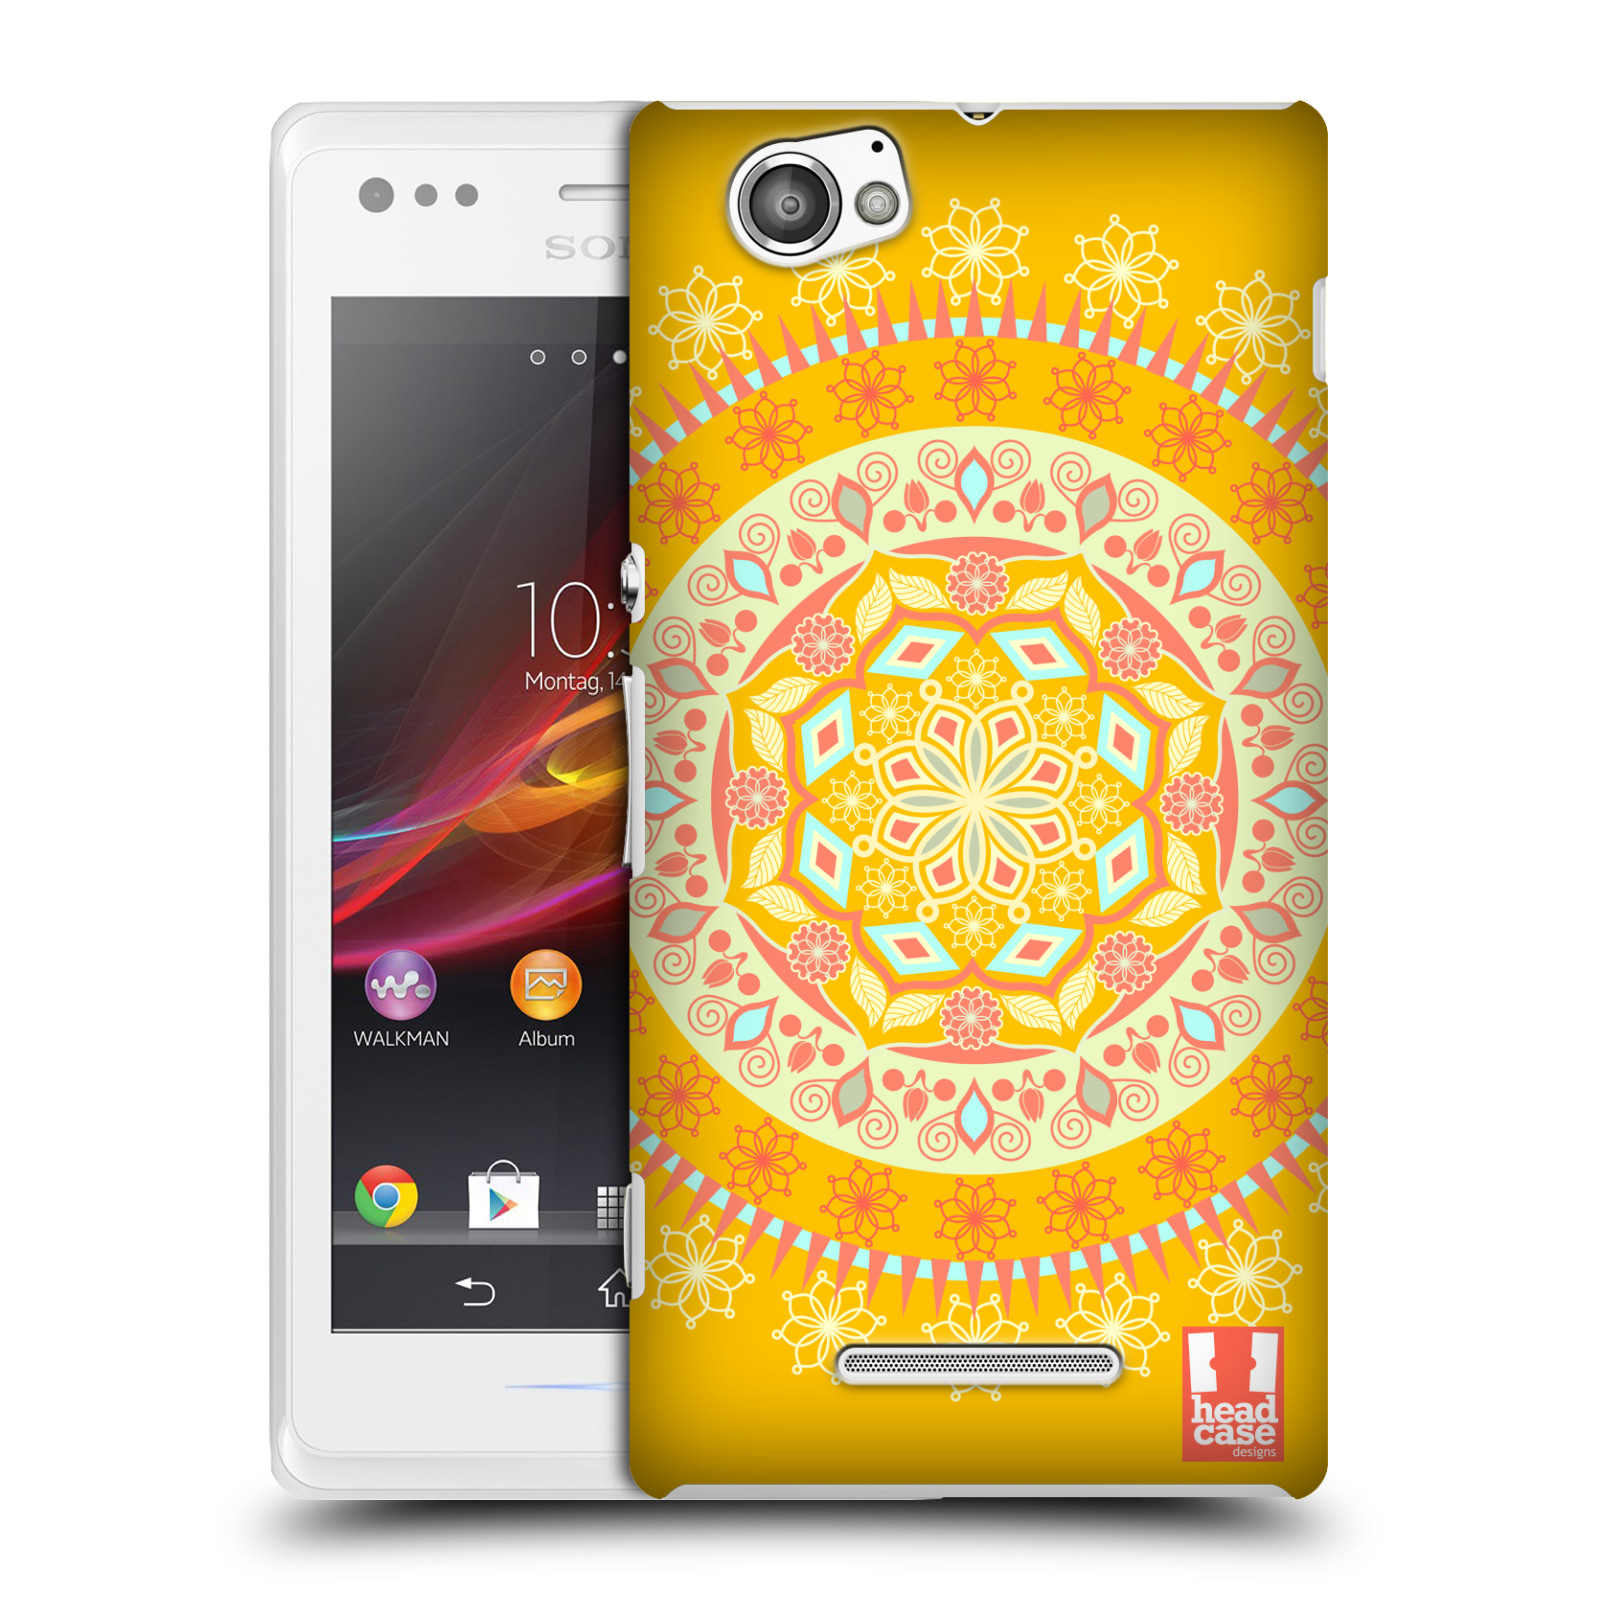 HEAD CASE plastový obal na mobil Sony Xperia M vzor Indie Mandala slunce barevný motiv ŽLUTÁ